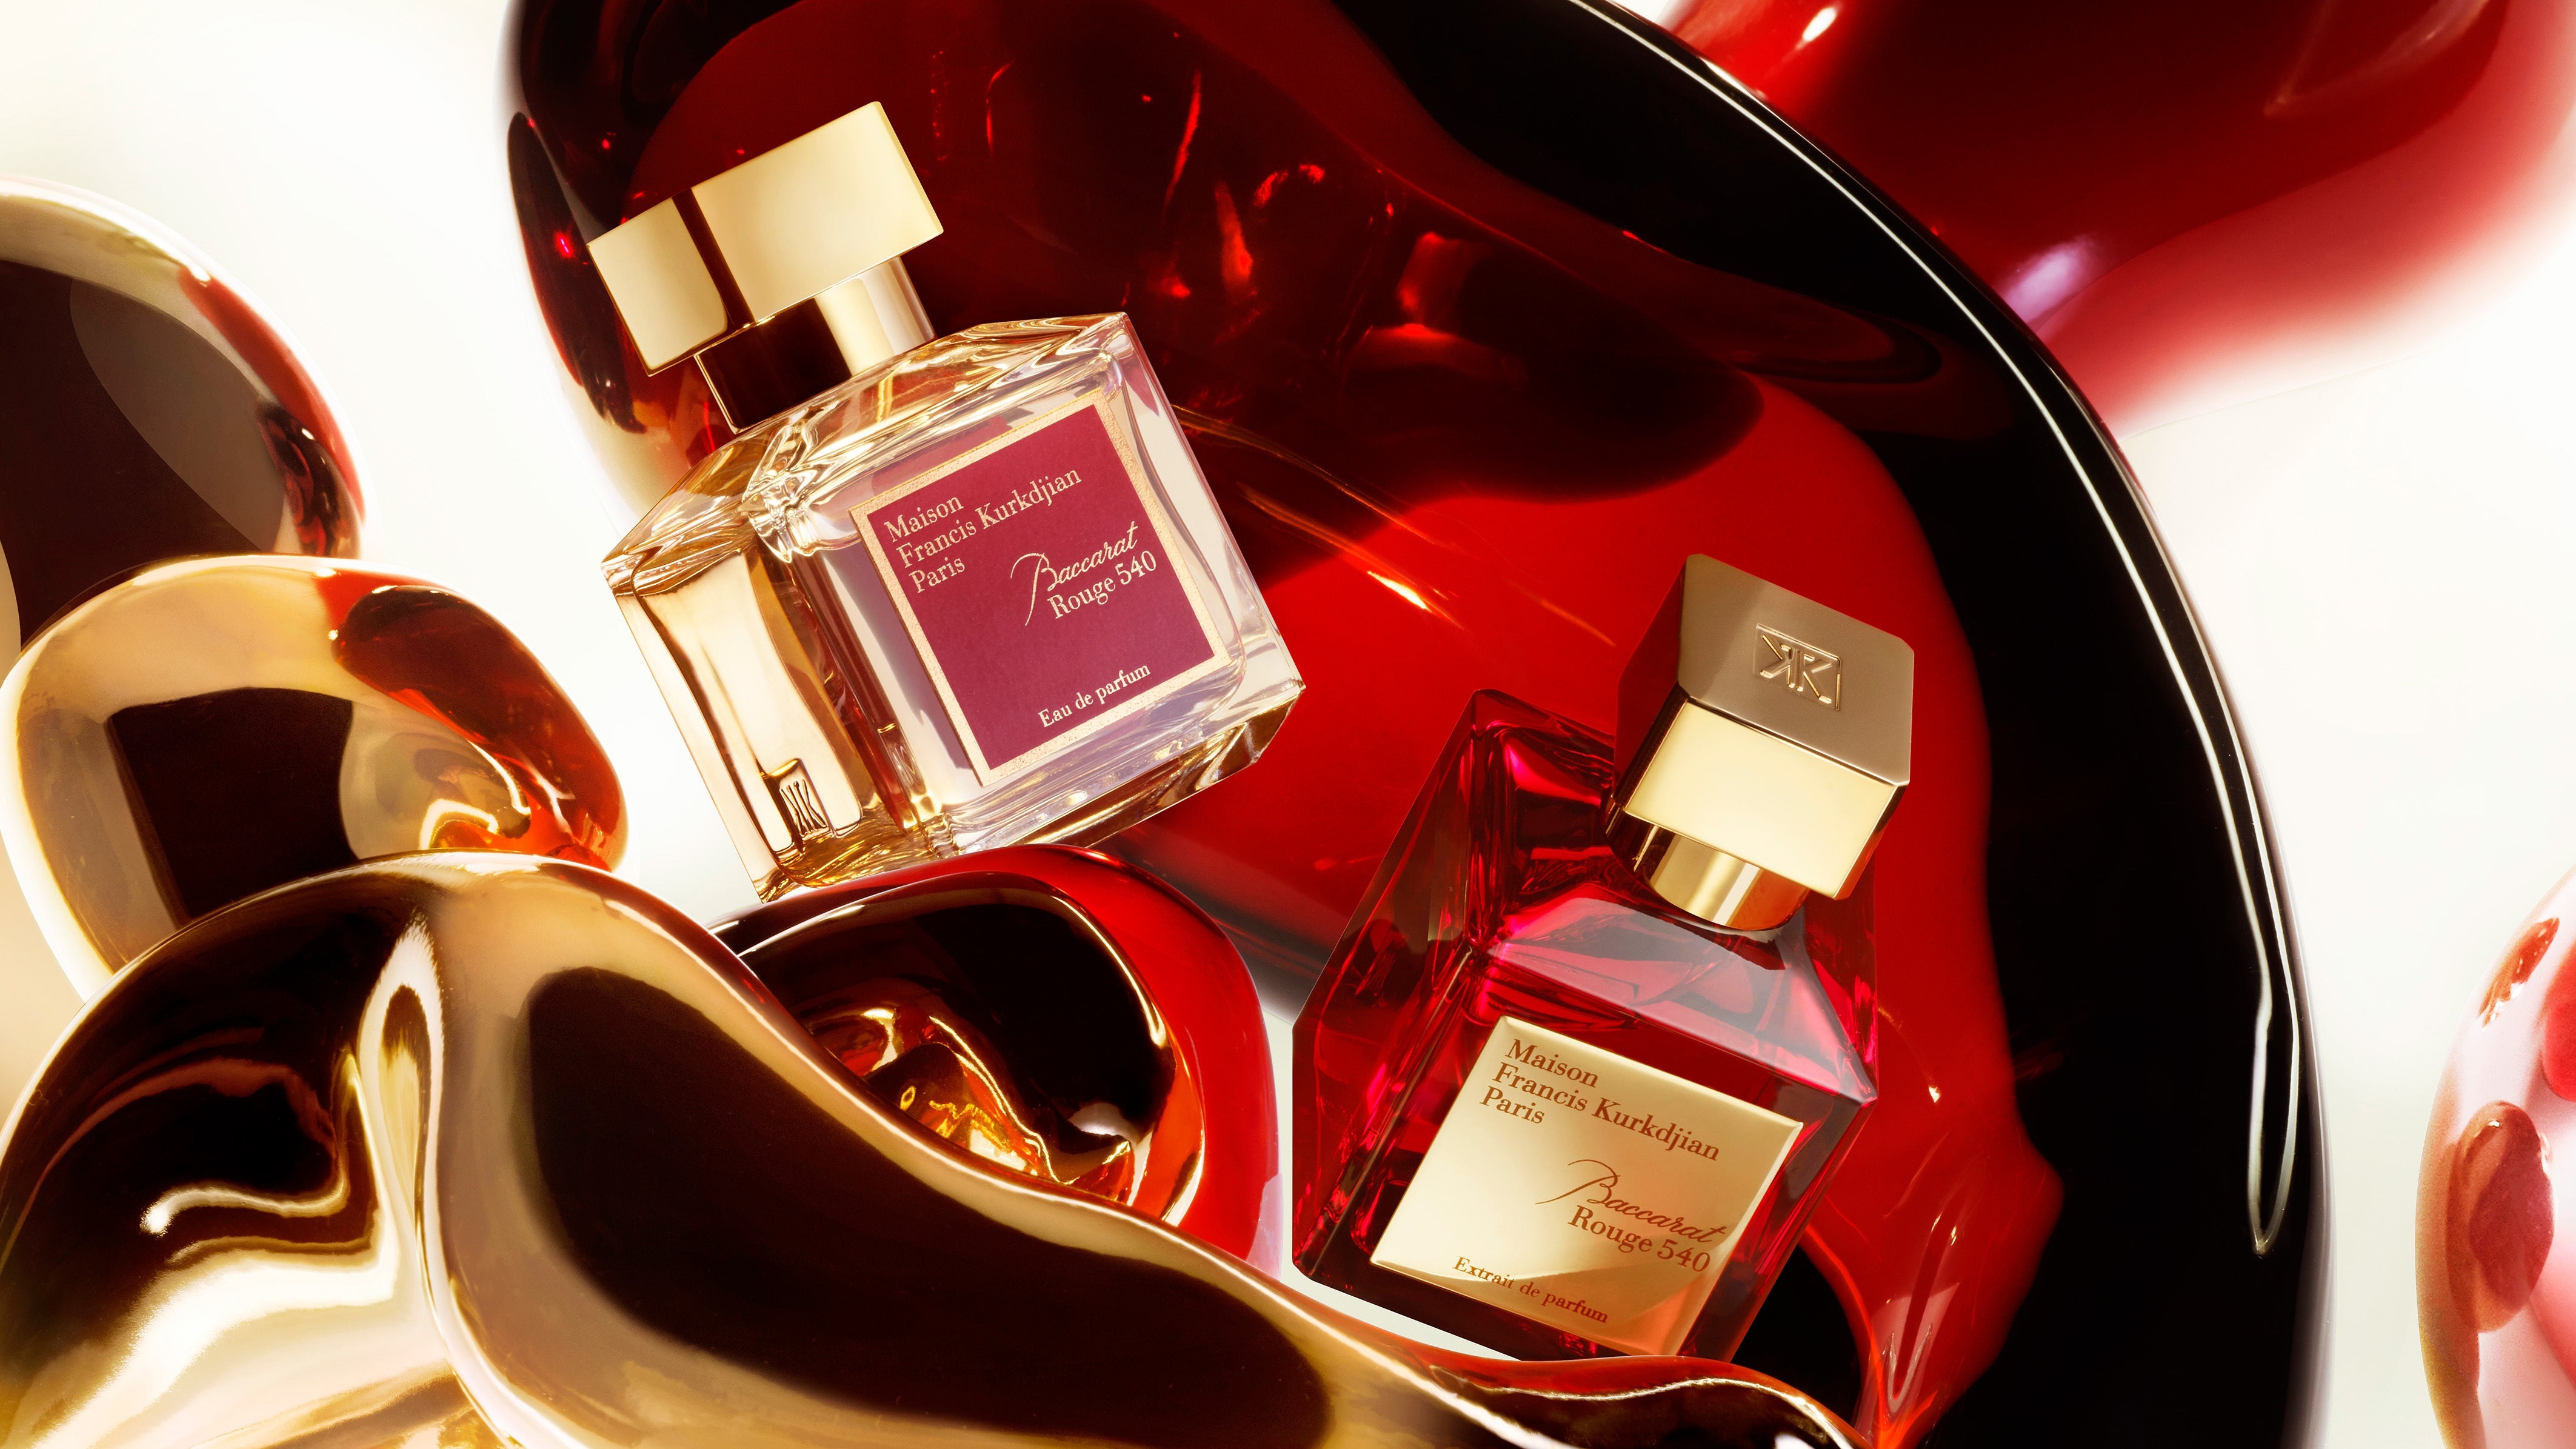 MFK Baccarat Rouge 540 EDP vs Extrait Parfum: A Head-to-Head Comparison - My Perfume Shop